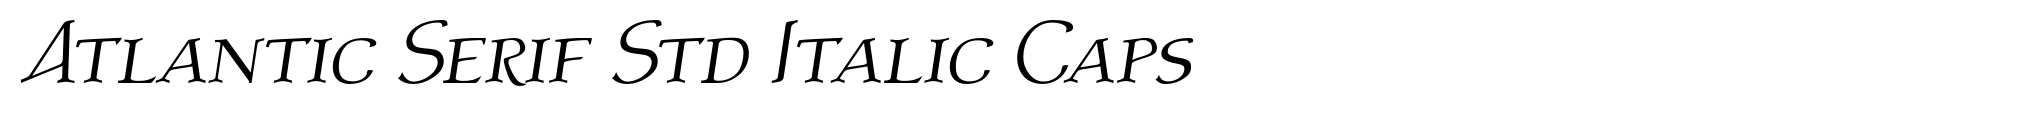 Atlantic Serif Std Italic Caps image